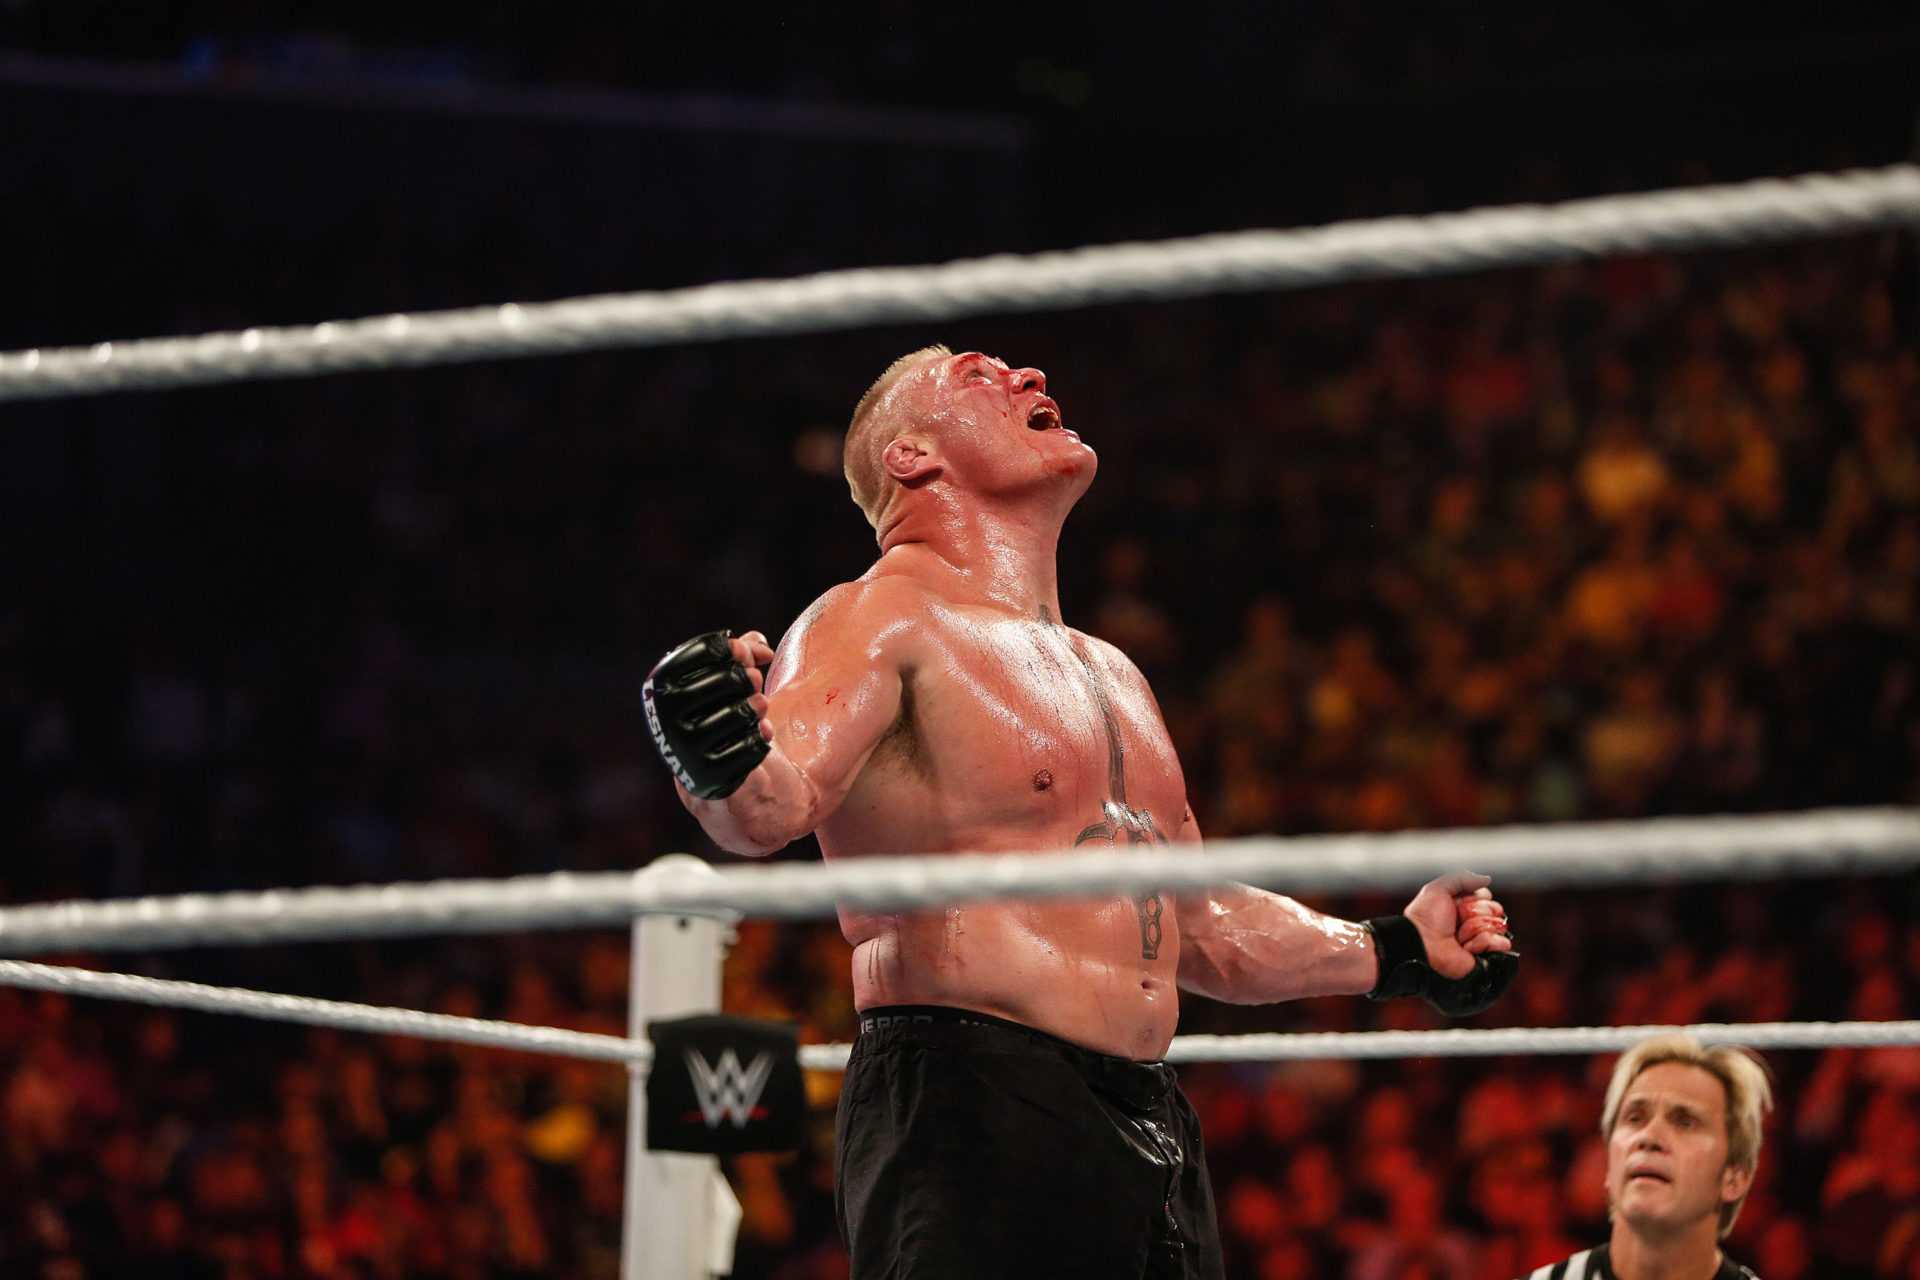 REGARDER: Quand Brock Lesnar a détruit Goldberg dans un match incroyablement physique à WrestleMania 33